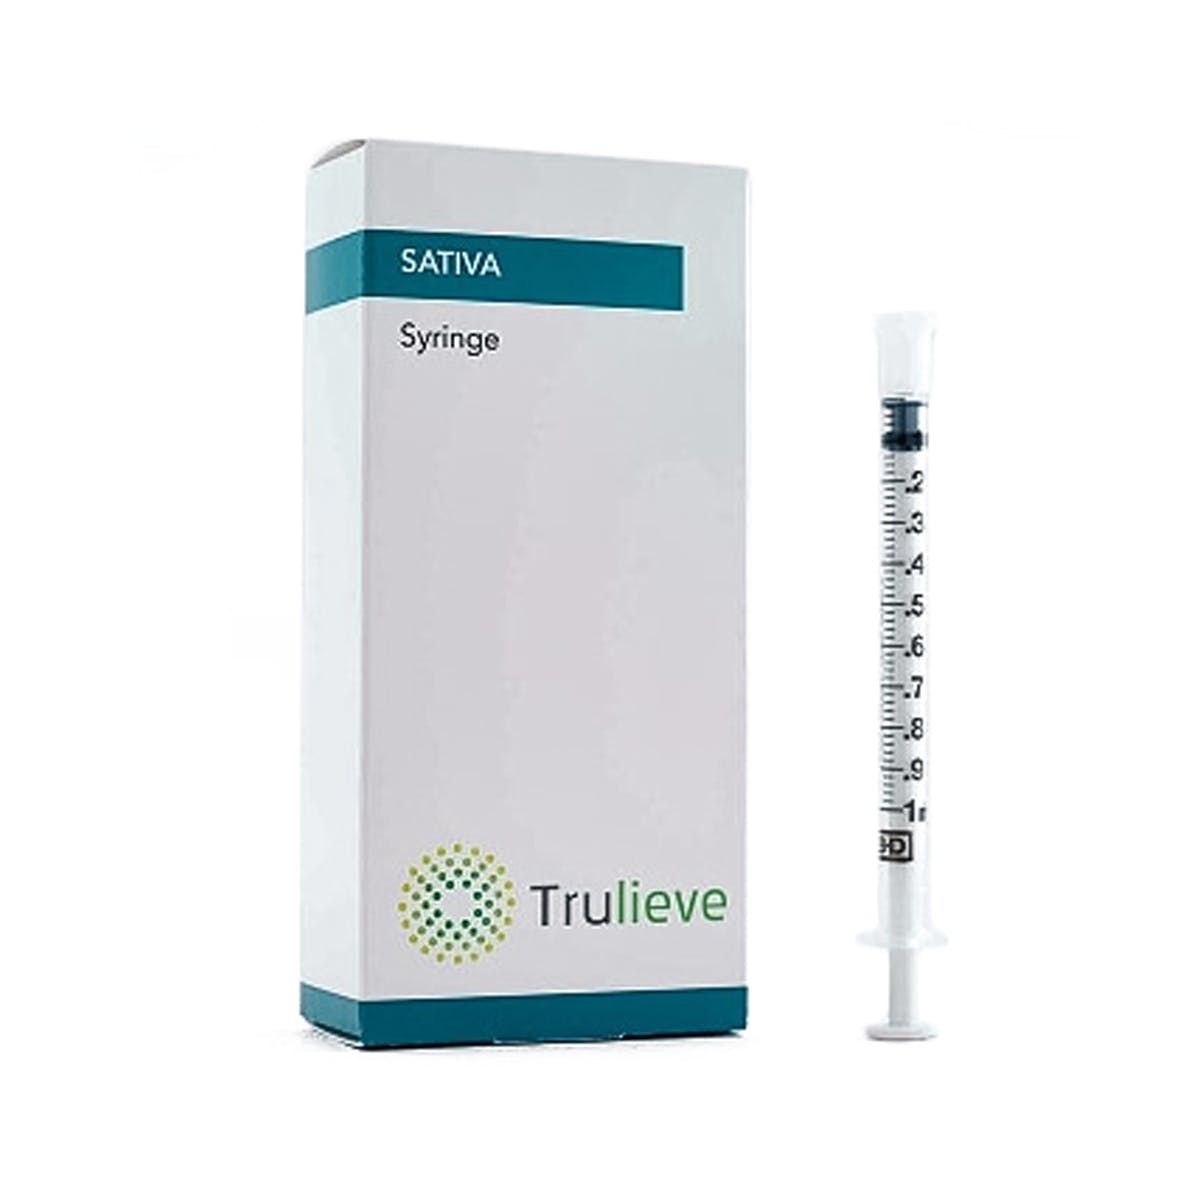 sativa-trulieve-oral-syringe-200mg-sativa